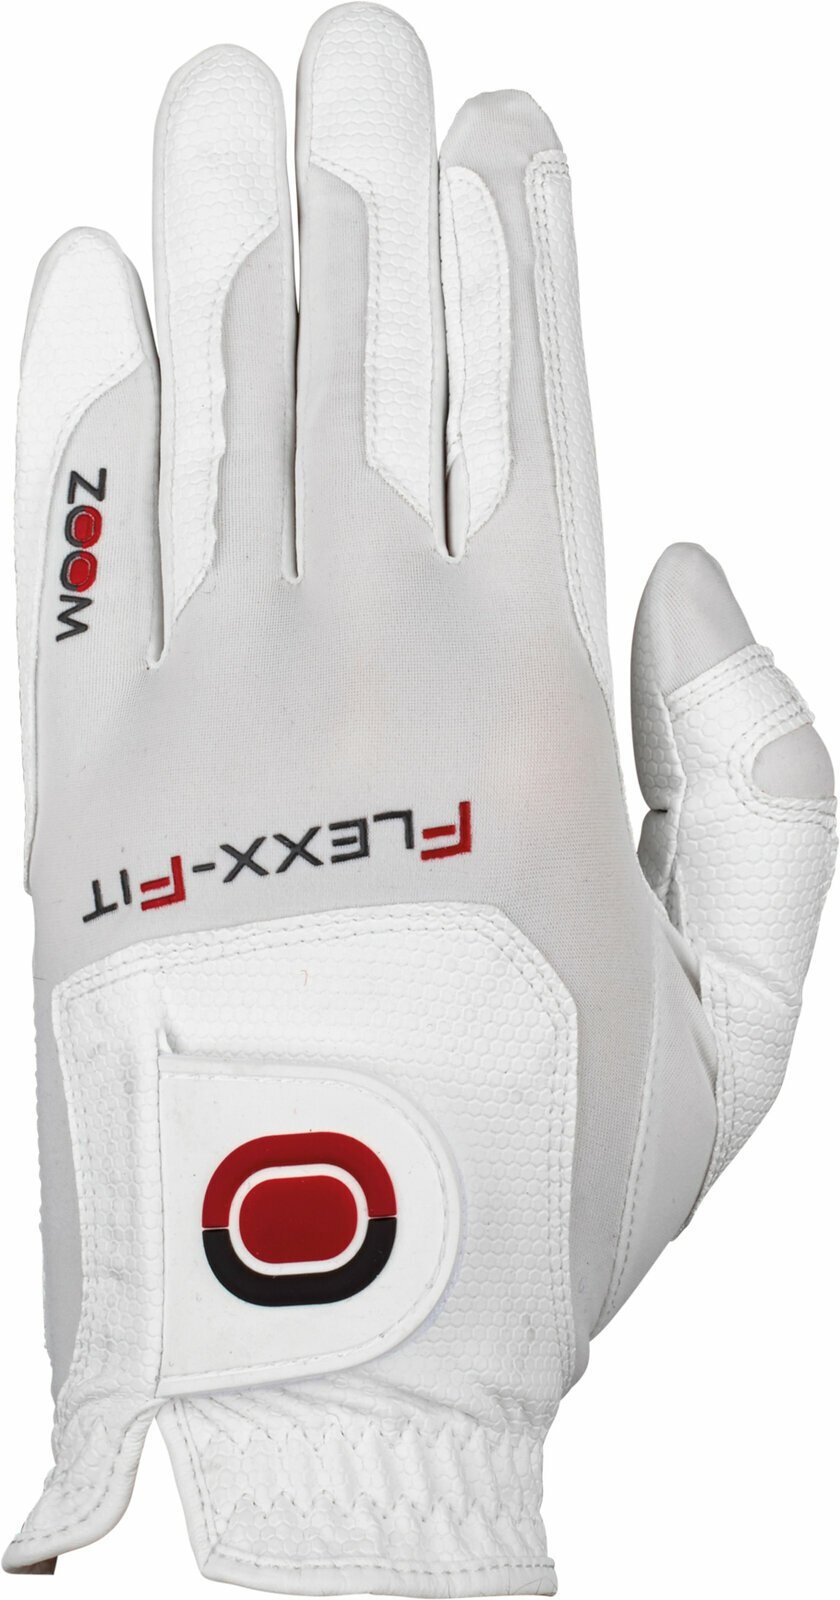 Gloves Zoom Gloves Weather Style Womens Golf Glove White RH